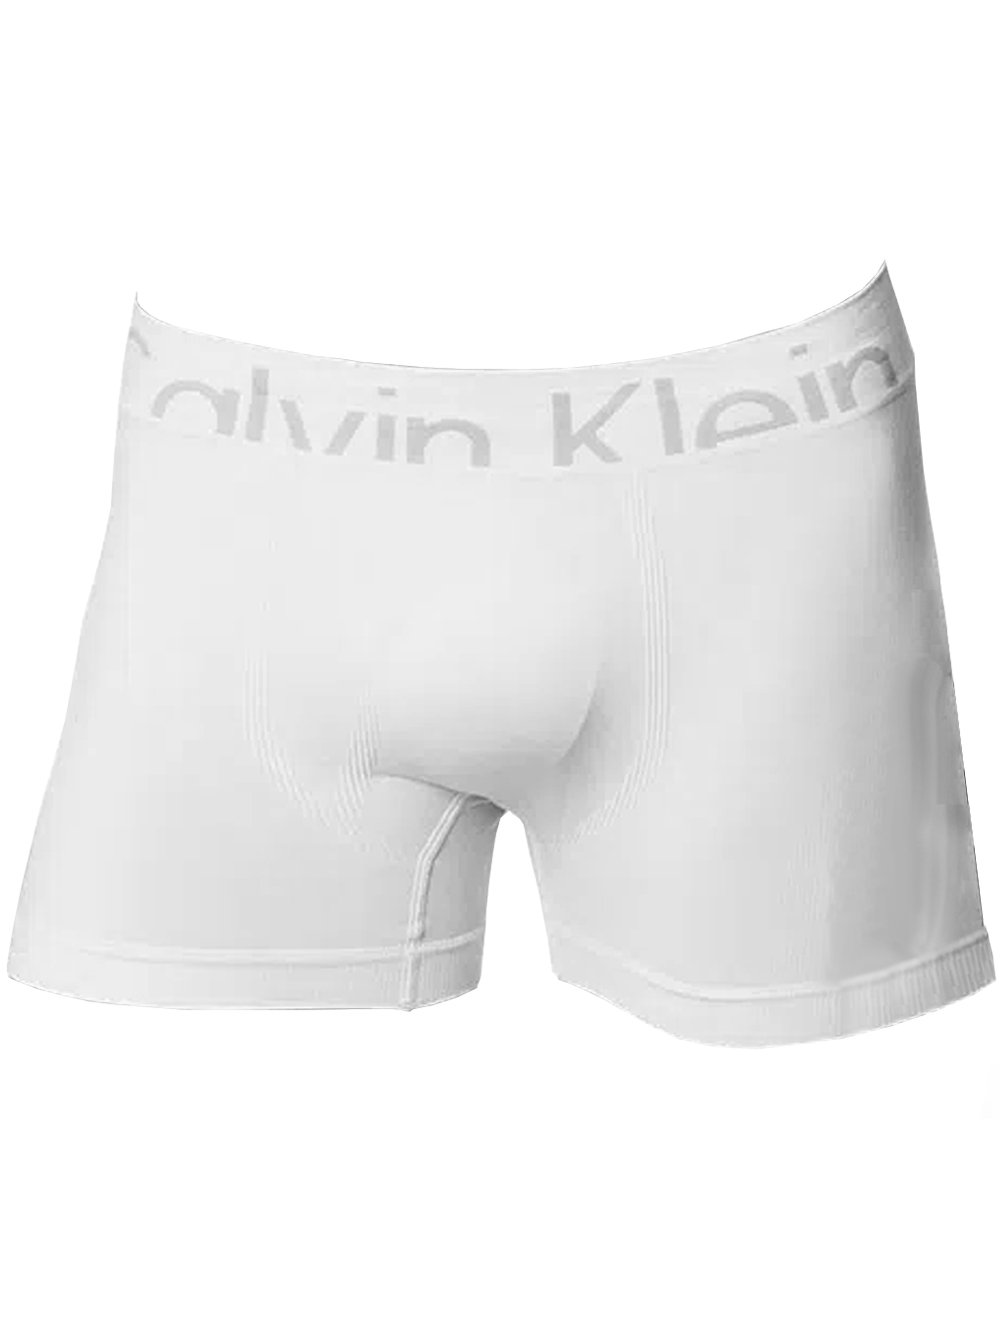 Cueca Calvin Klein Boxer Trunk Seamless Bolzano Branca 1UN